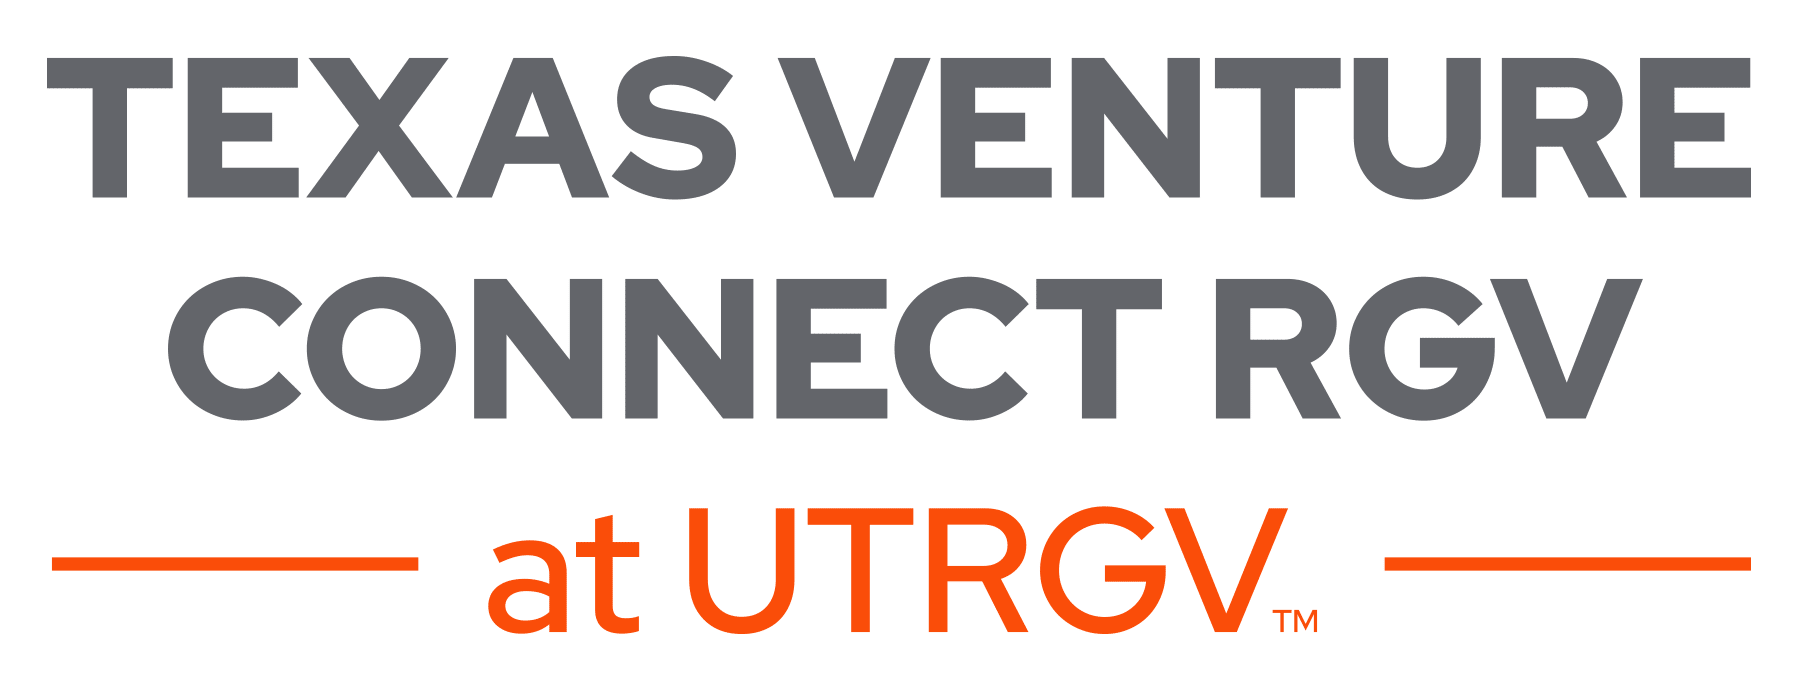 Texas Venture Cconnect - Rio Grande Valley